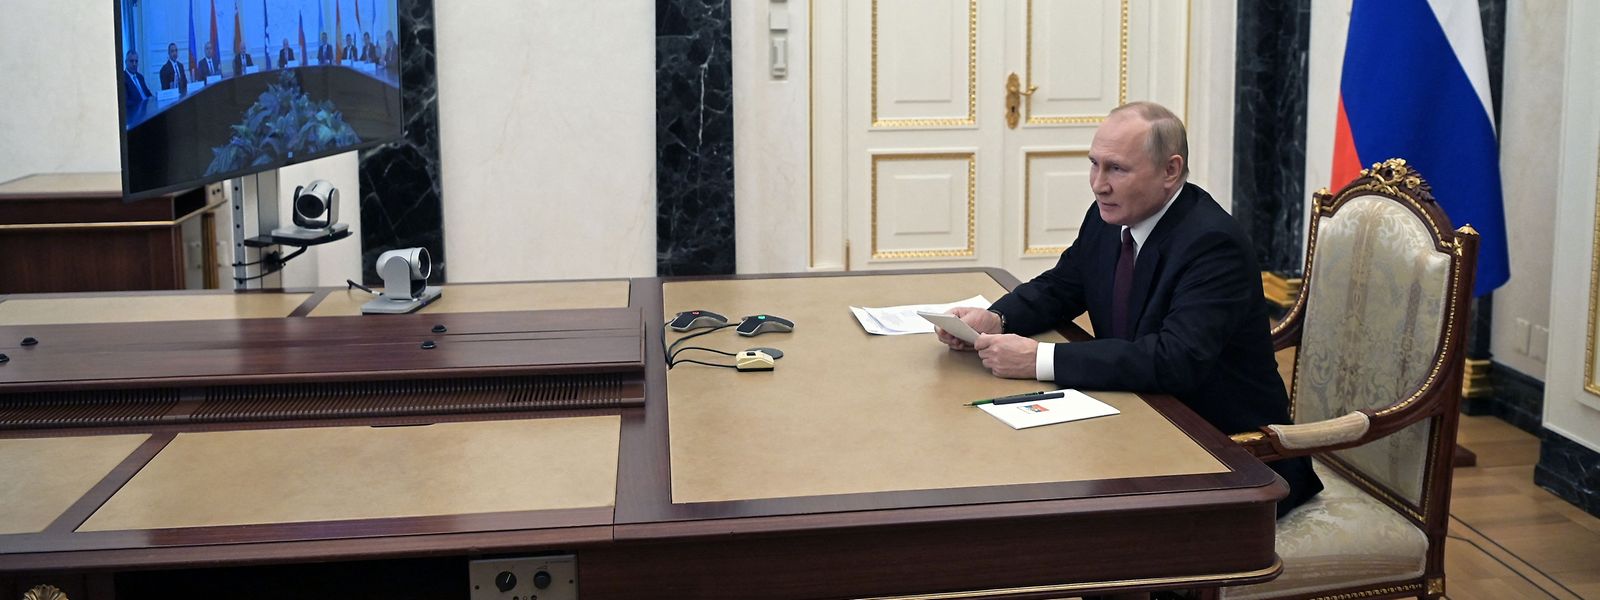 Putin verfolgte die Übung per Videoschalte von seinem Amtssitz aus.